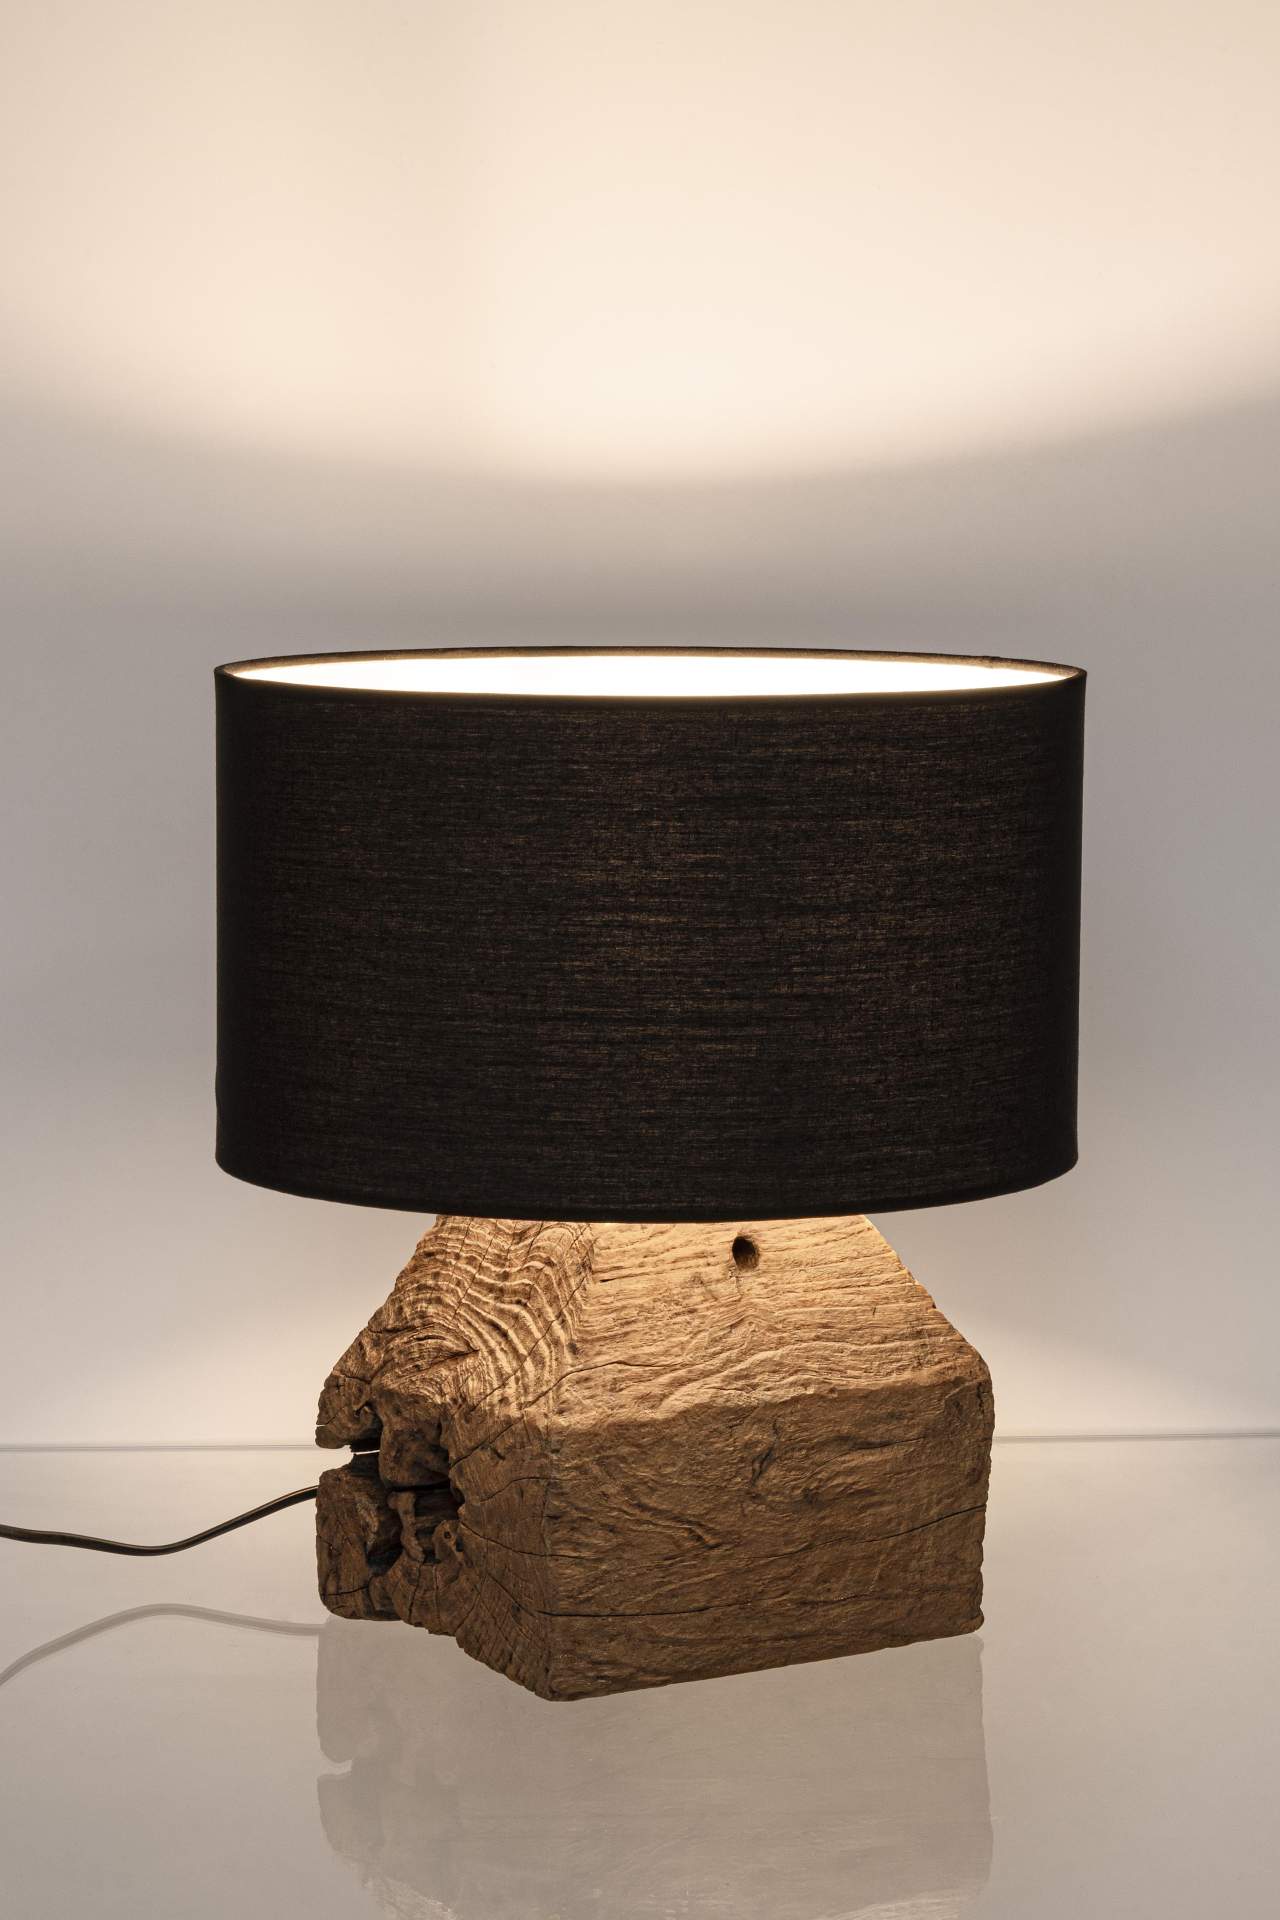 Die Tischleuchte Lumen überzeugt mit ihrem klassischen Design. Gefertigt wurde sie aus recyceltem Teakholz, welches einen natürlichen Farbton besitzt. Der Lampenschirm ist aus Baumwolle und hat eine schwarze Farbe. Die Lampe besitzt eine Höhe von 40 cm.